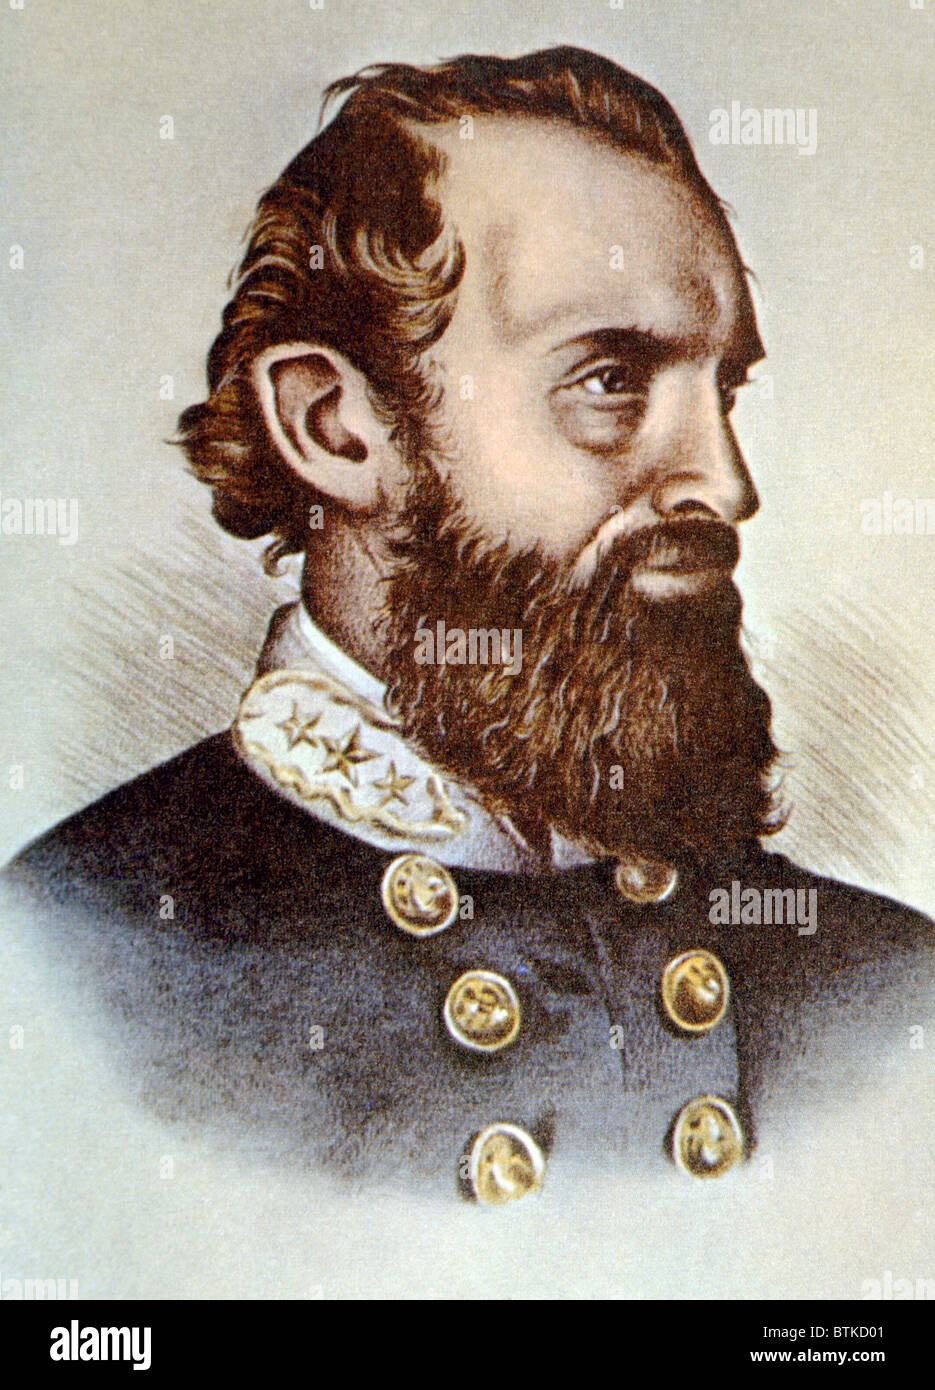 Thomas J. "Stonewall" Jackson (1824-1863), General der Konföderierten während des Bürgerkrieges Stockfoto